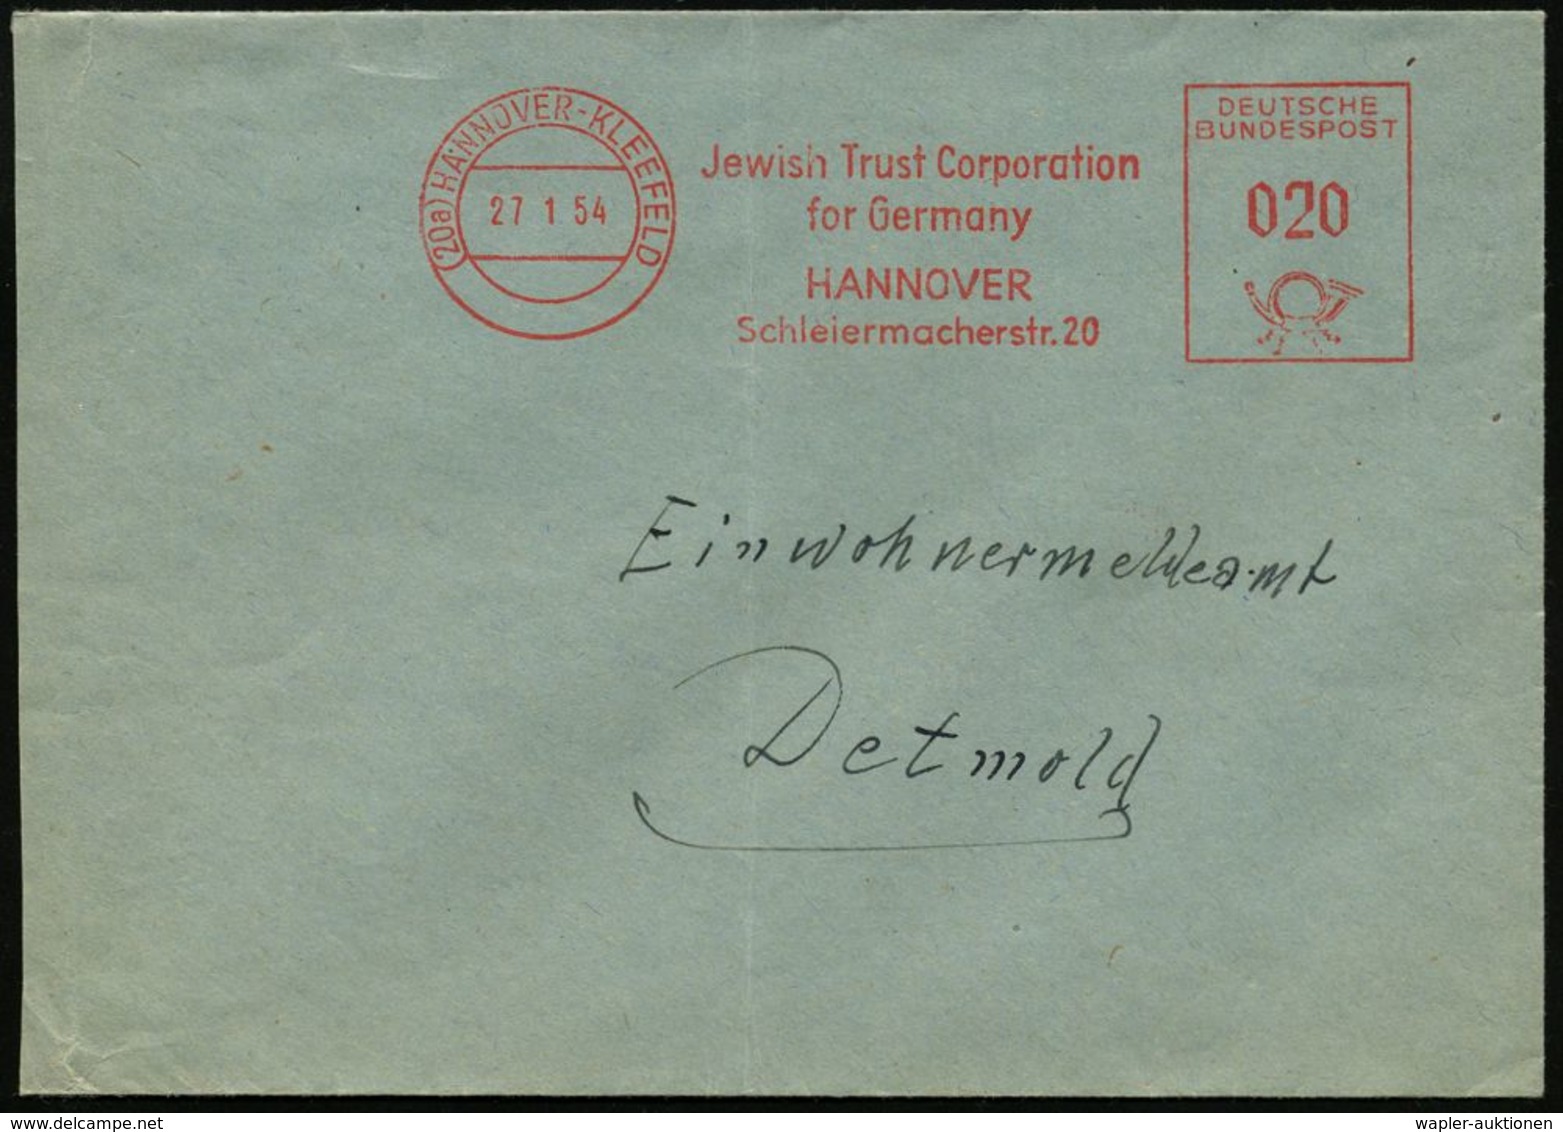 JUDAICA / JÜDISCHE GESCHICHTE / ZIONISMUS : (20a) HANNOVER-KLEEFELD/ Jewish Trust Corporation/ For Germany.. 1954 (27.1. - Judaisme